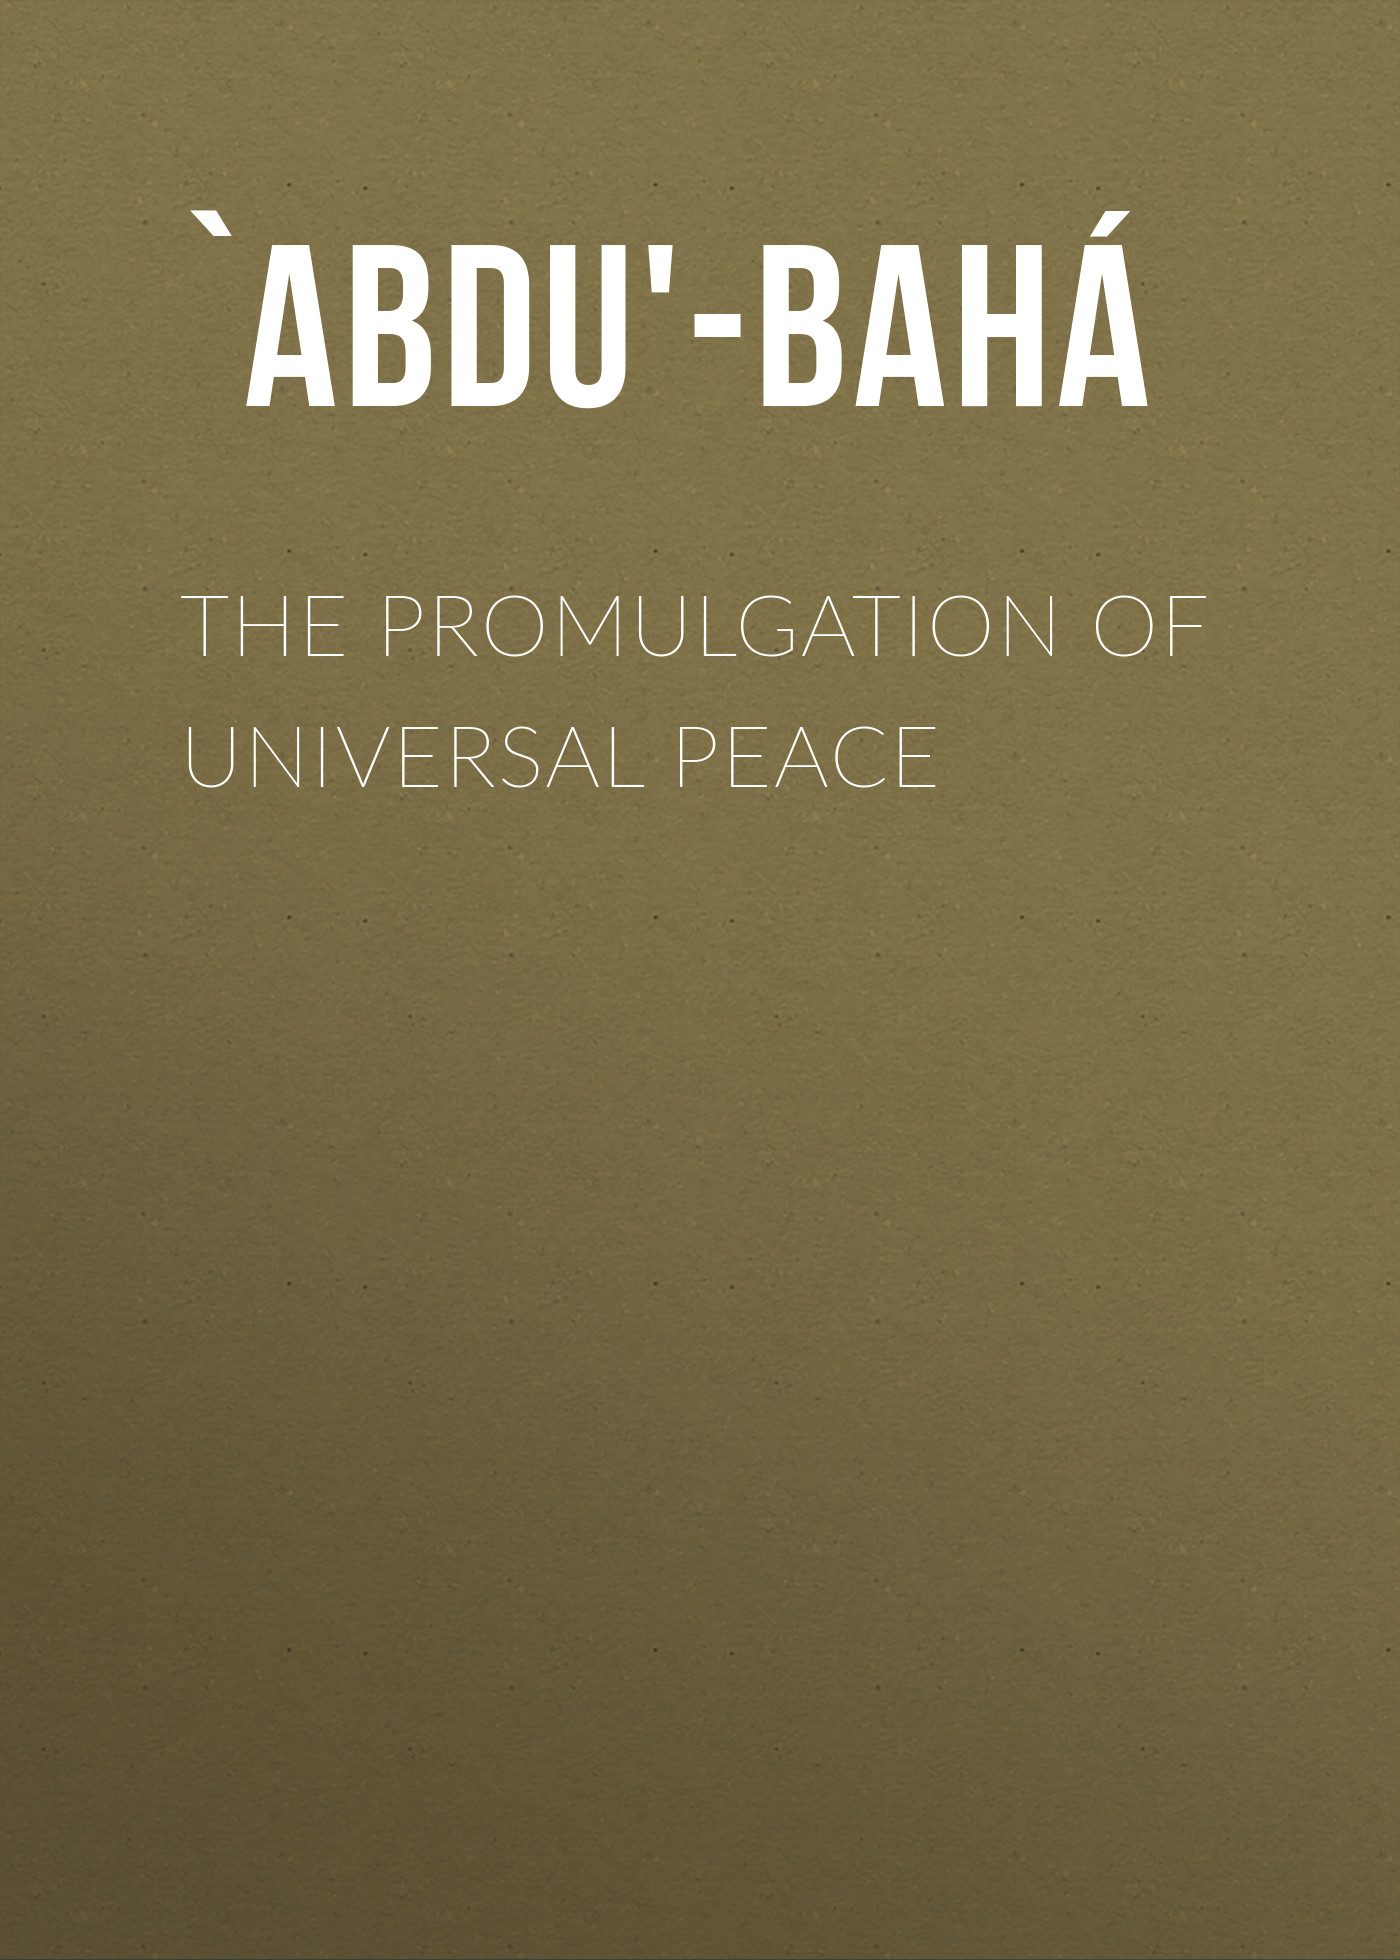 Книга The Promulgation of Universal Peace из серии , созданная  `Abdu'-Bahá, может относится к жанру Зарубежная классика, Зарубежная эзотерическая и религиозная литература, Философия, Ужасы и Мистика, Зарубежная психология. Стоимость электронной книги The Promulgation of Universal Peace с идентификатором 36363590 составляет 0 руб.